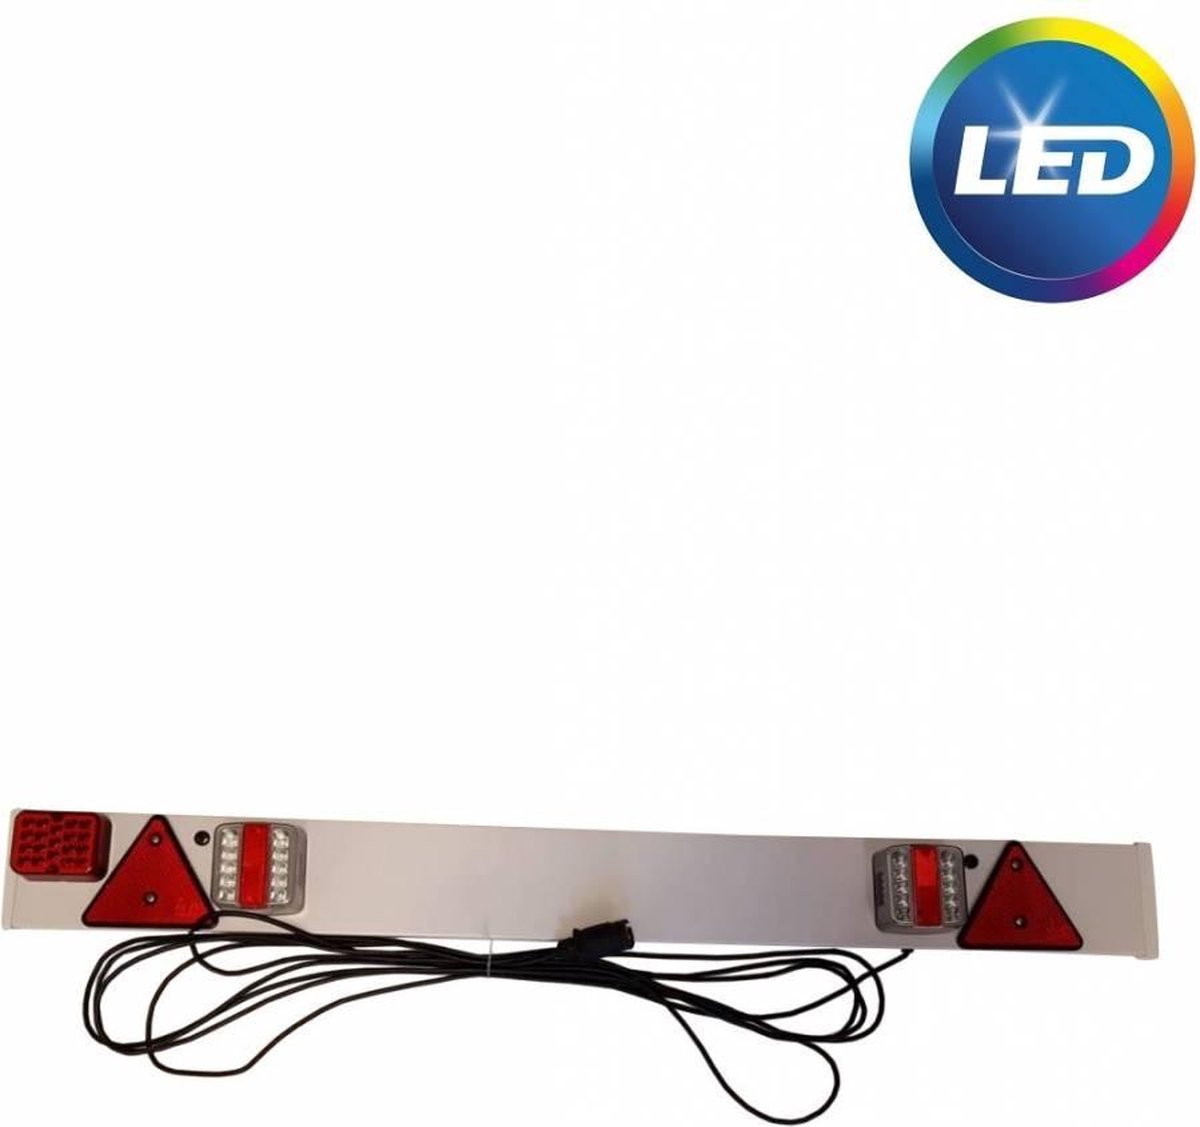 Complete kunststof lichtbalk voor aanhangers en trailers - 137 cm breed- 7 polig - 9 meter kabel main image